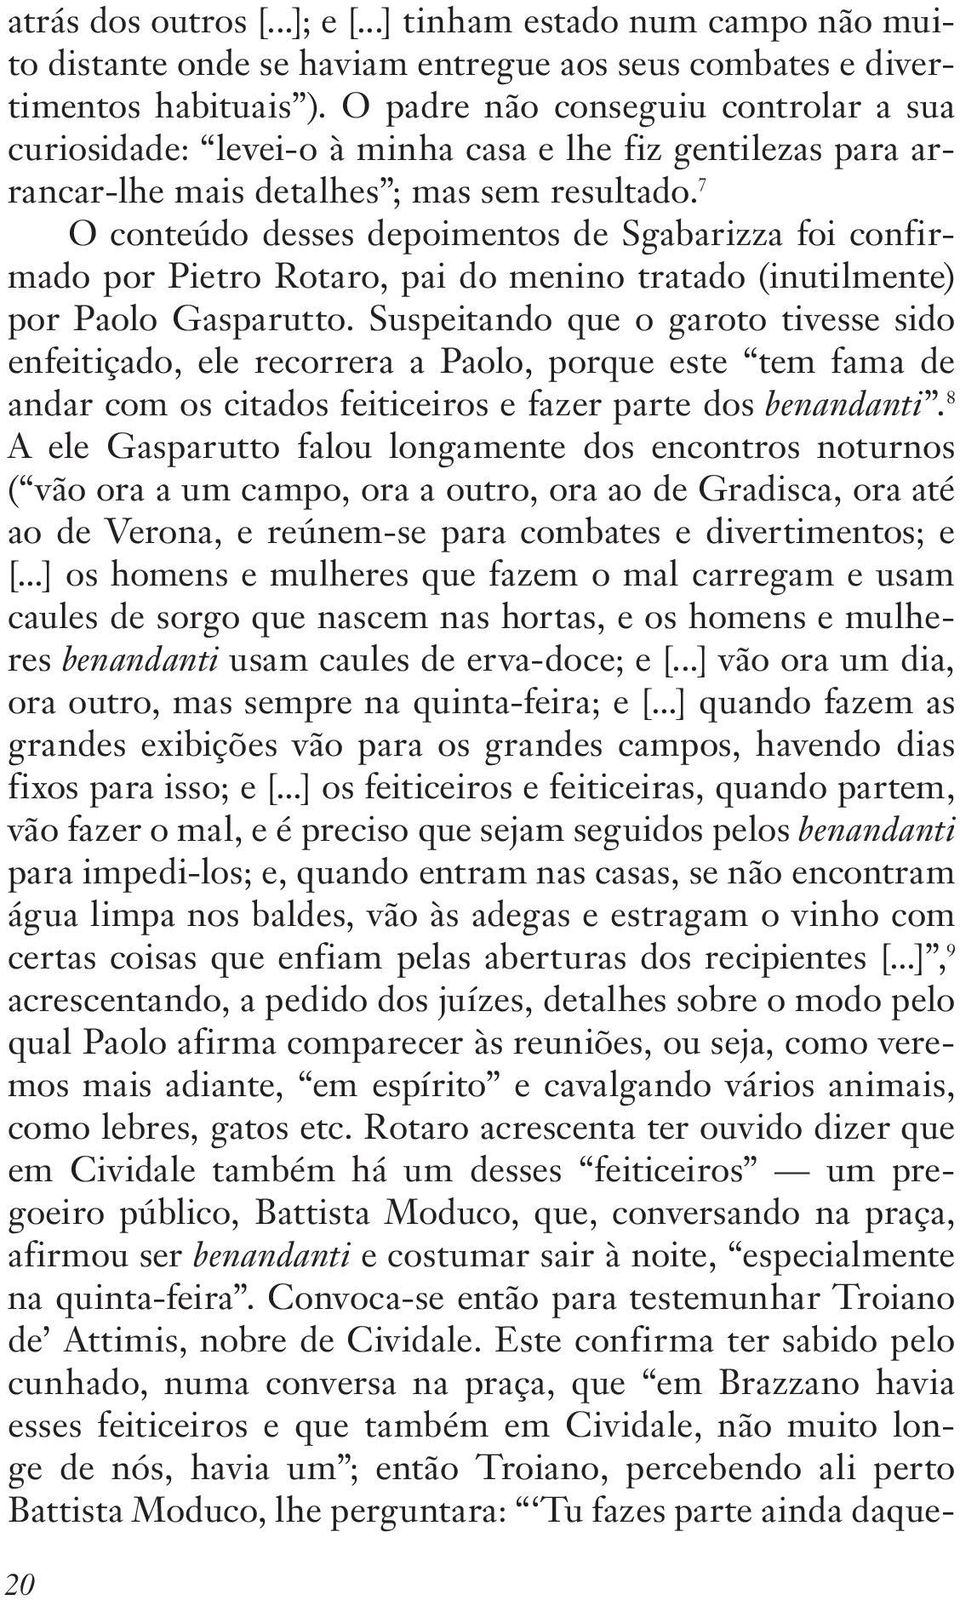 7 O conteúdo desses depoimentos de Sgabarizza foi confirmado por Pietro Rotaro, pai do menino tratado (inutilmente) por Paolo Gasparutto.